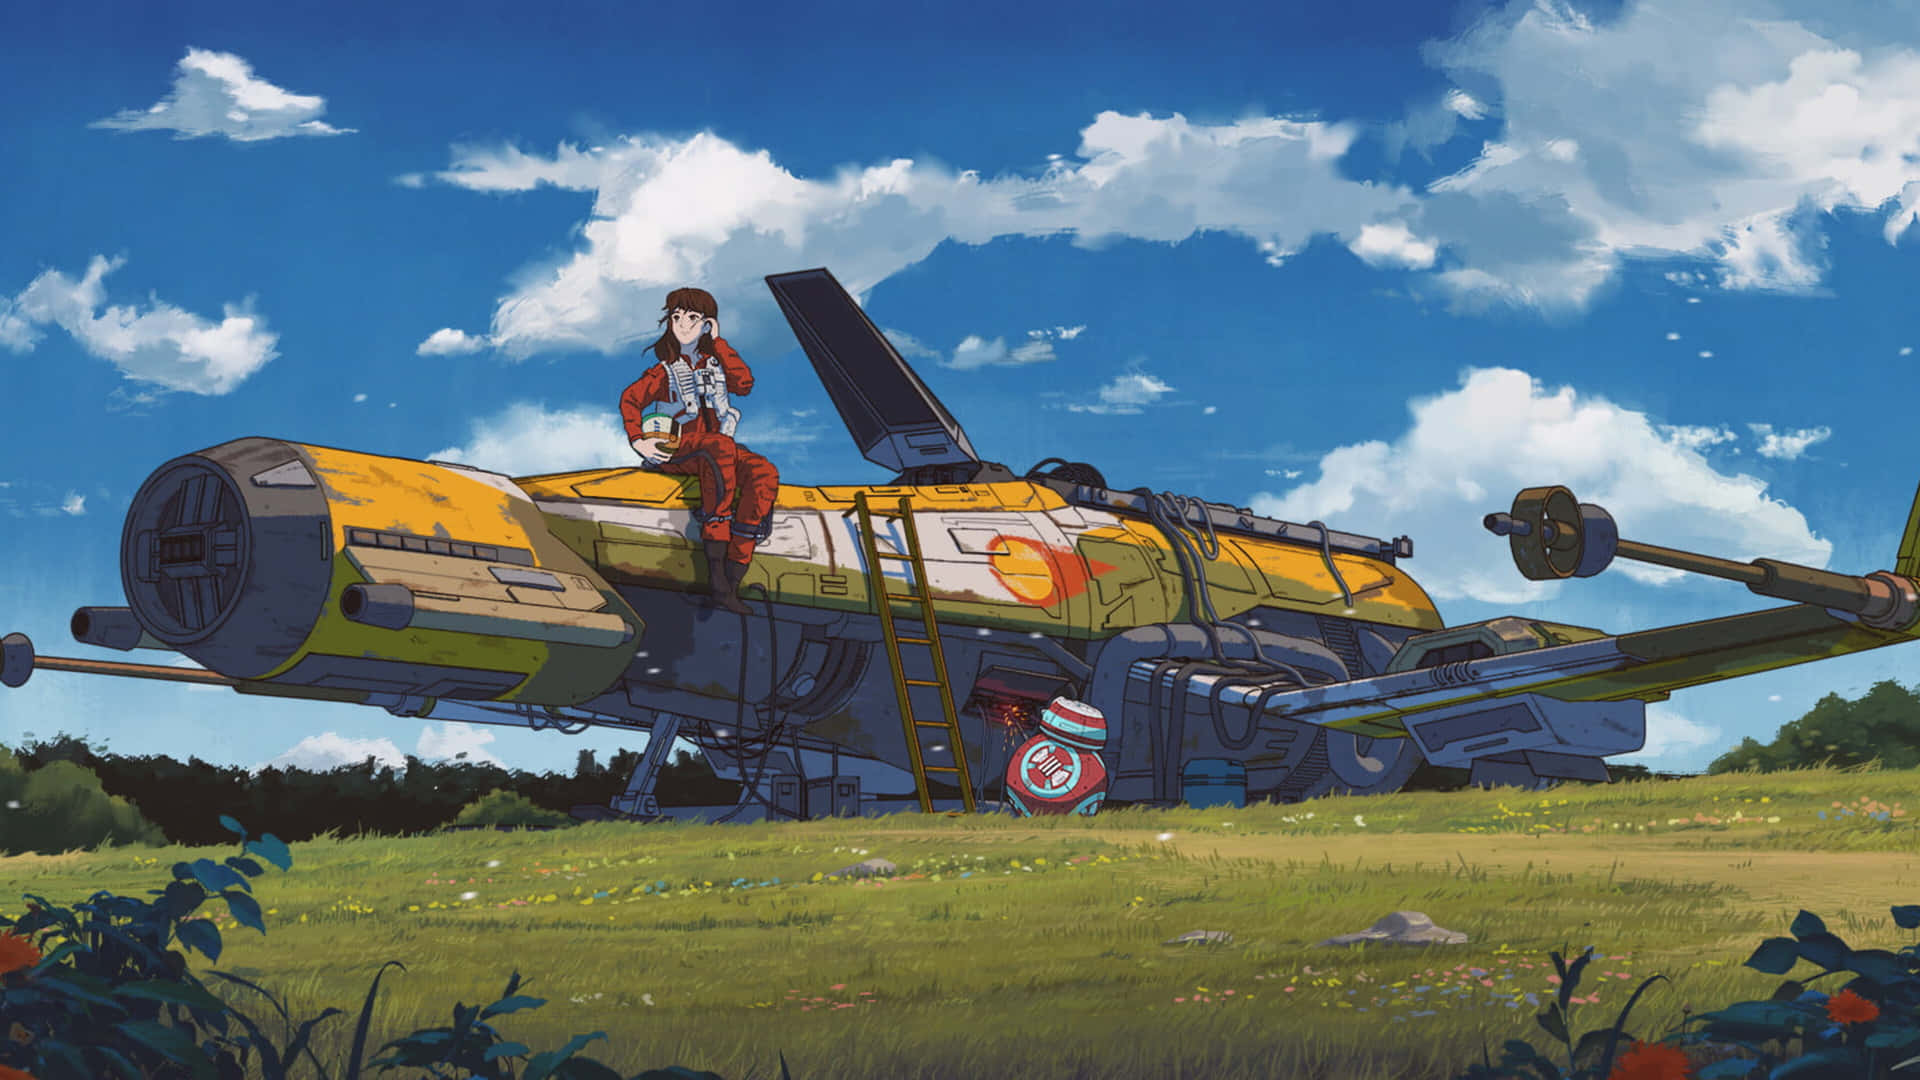 Fondode Pantalla De Studio Ghibli Con Resolución De 3840 X 2160.